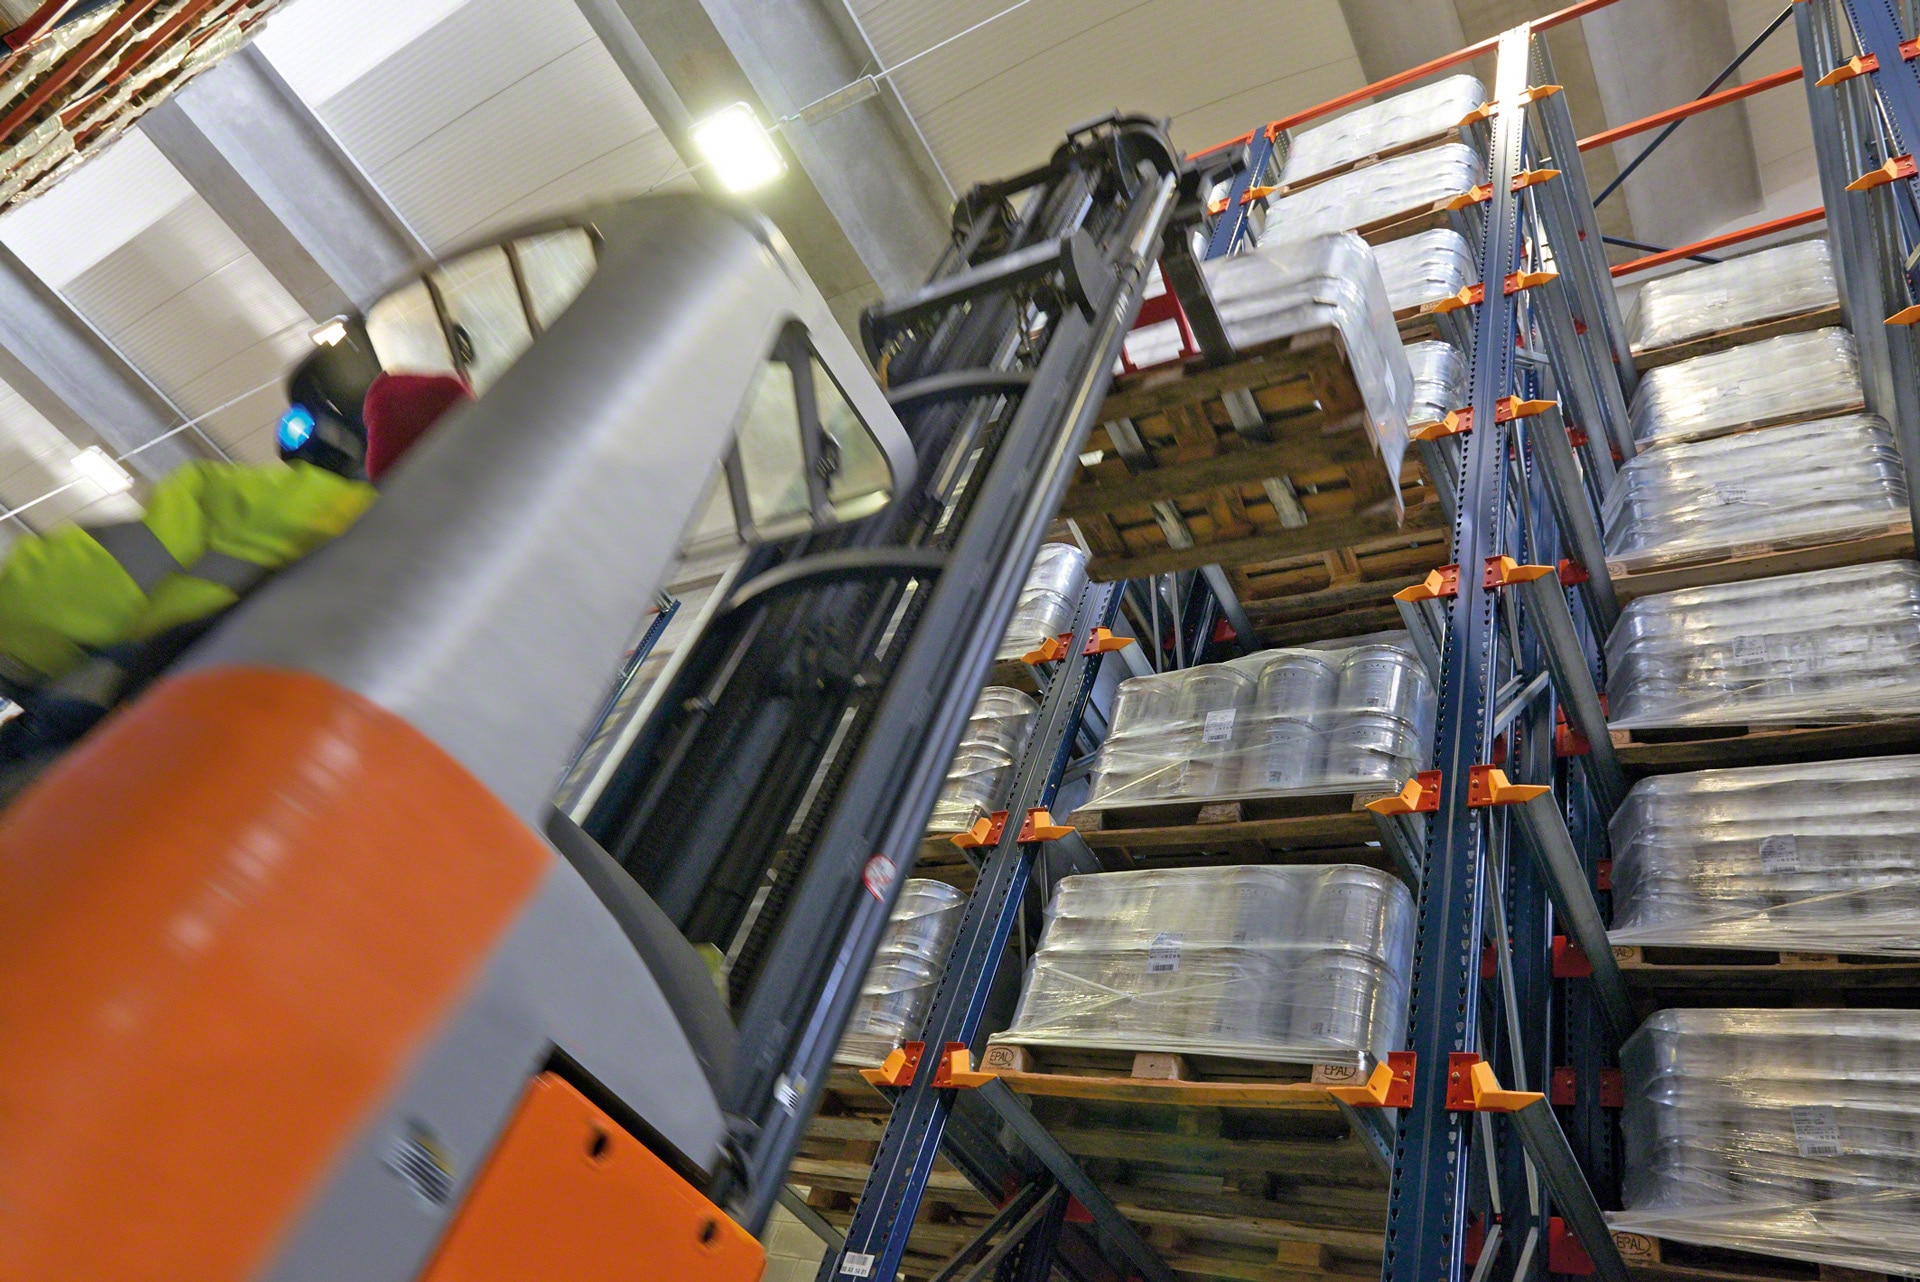 Los racks compactos facilitan a los equipos de manutención la carga y descarga de mercadería